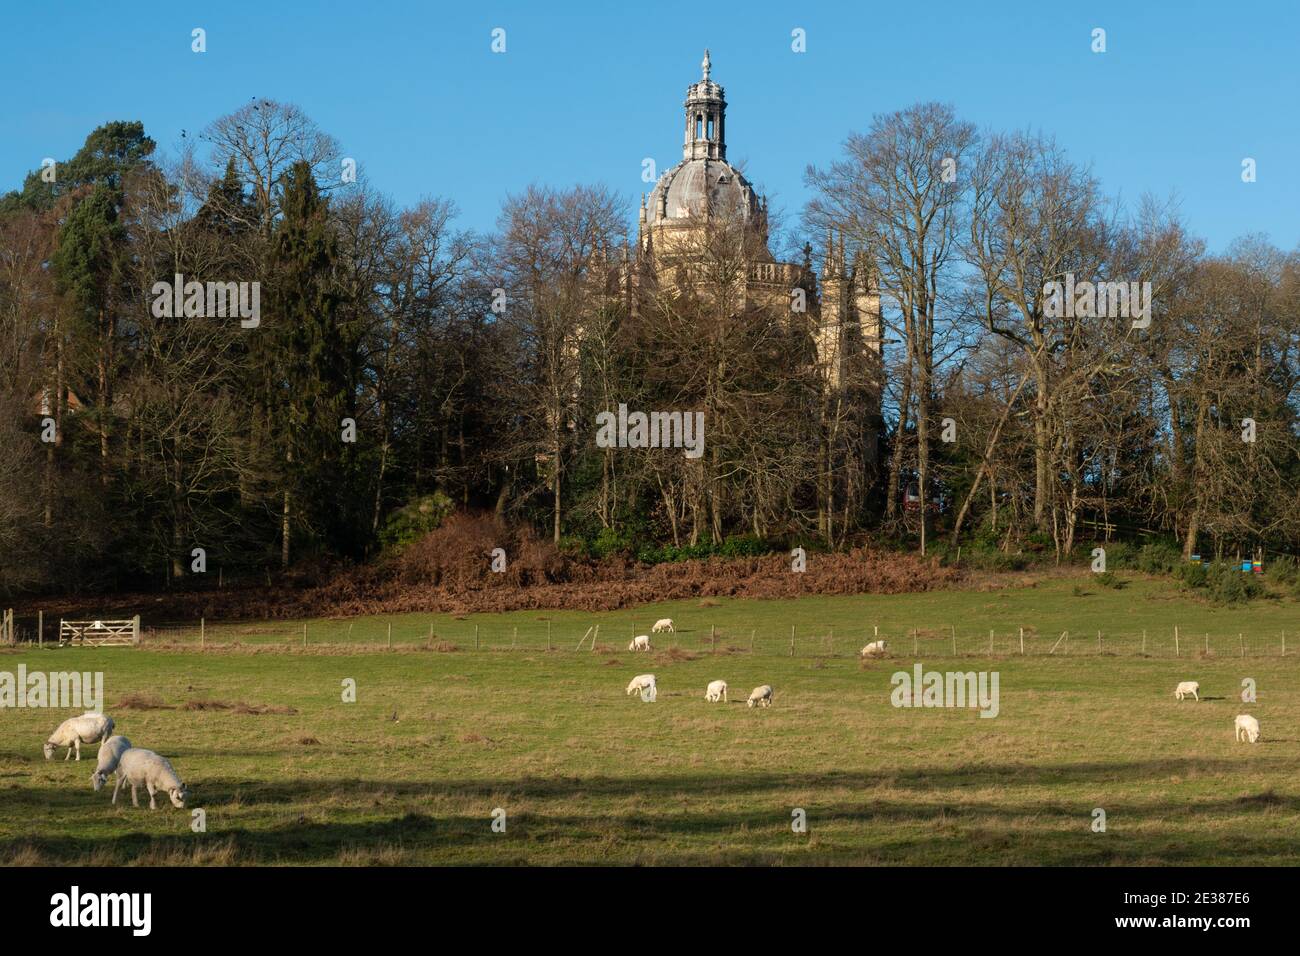 La chiesa di St. Michael's Abbey, un monastero benedettino a Farnborough, Hampshire, Regno Unito, con il pascolo delle pecore in un campo in primo piano Foto Stock